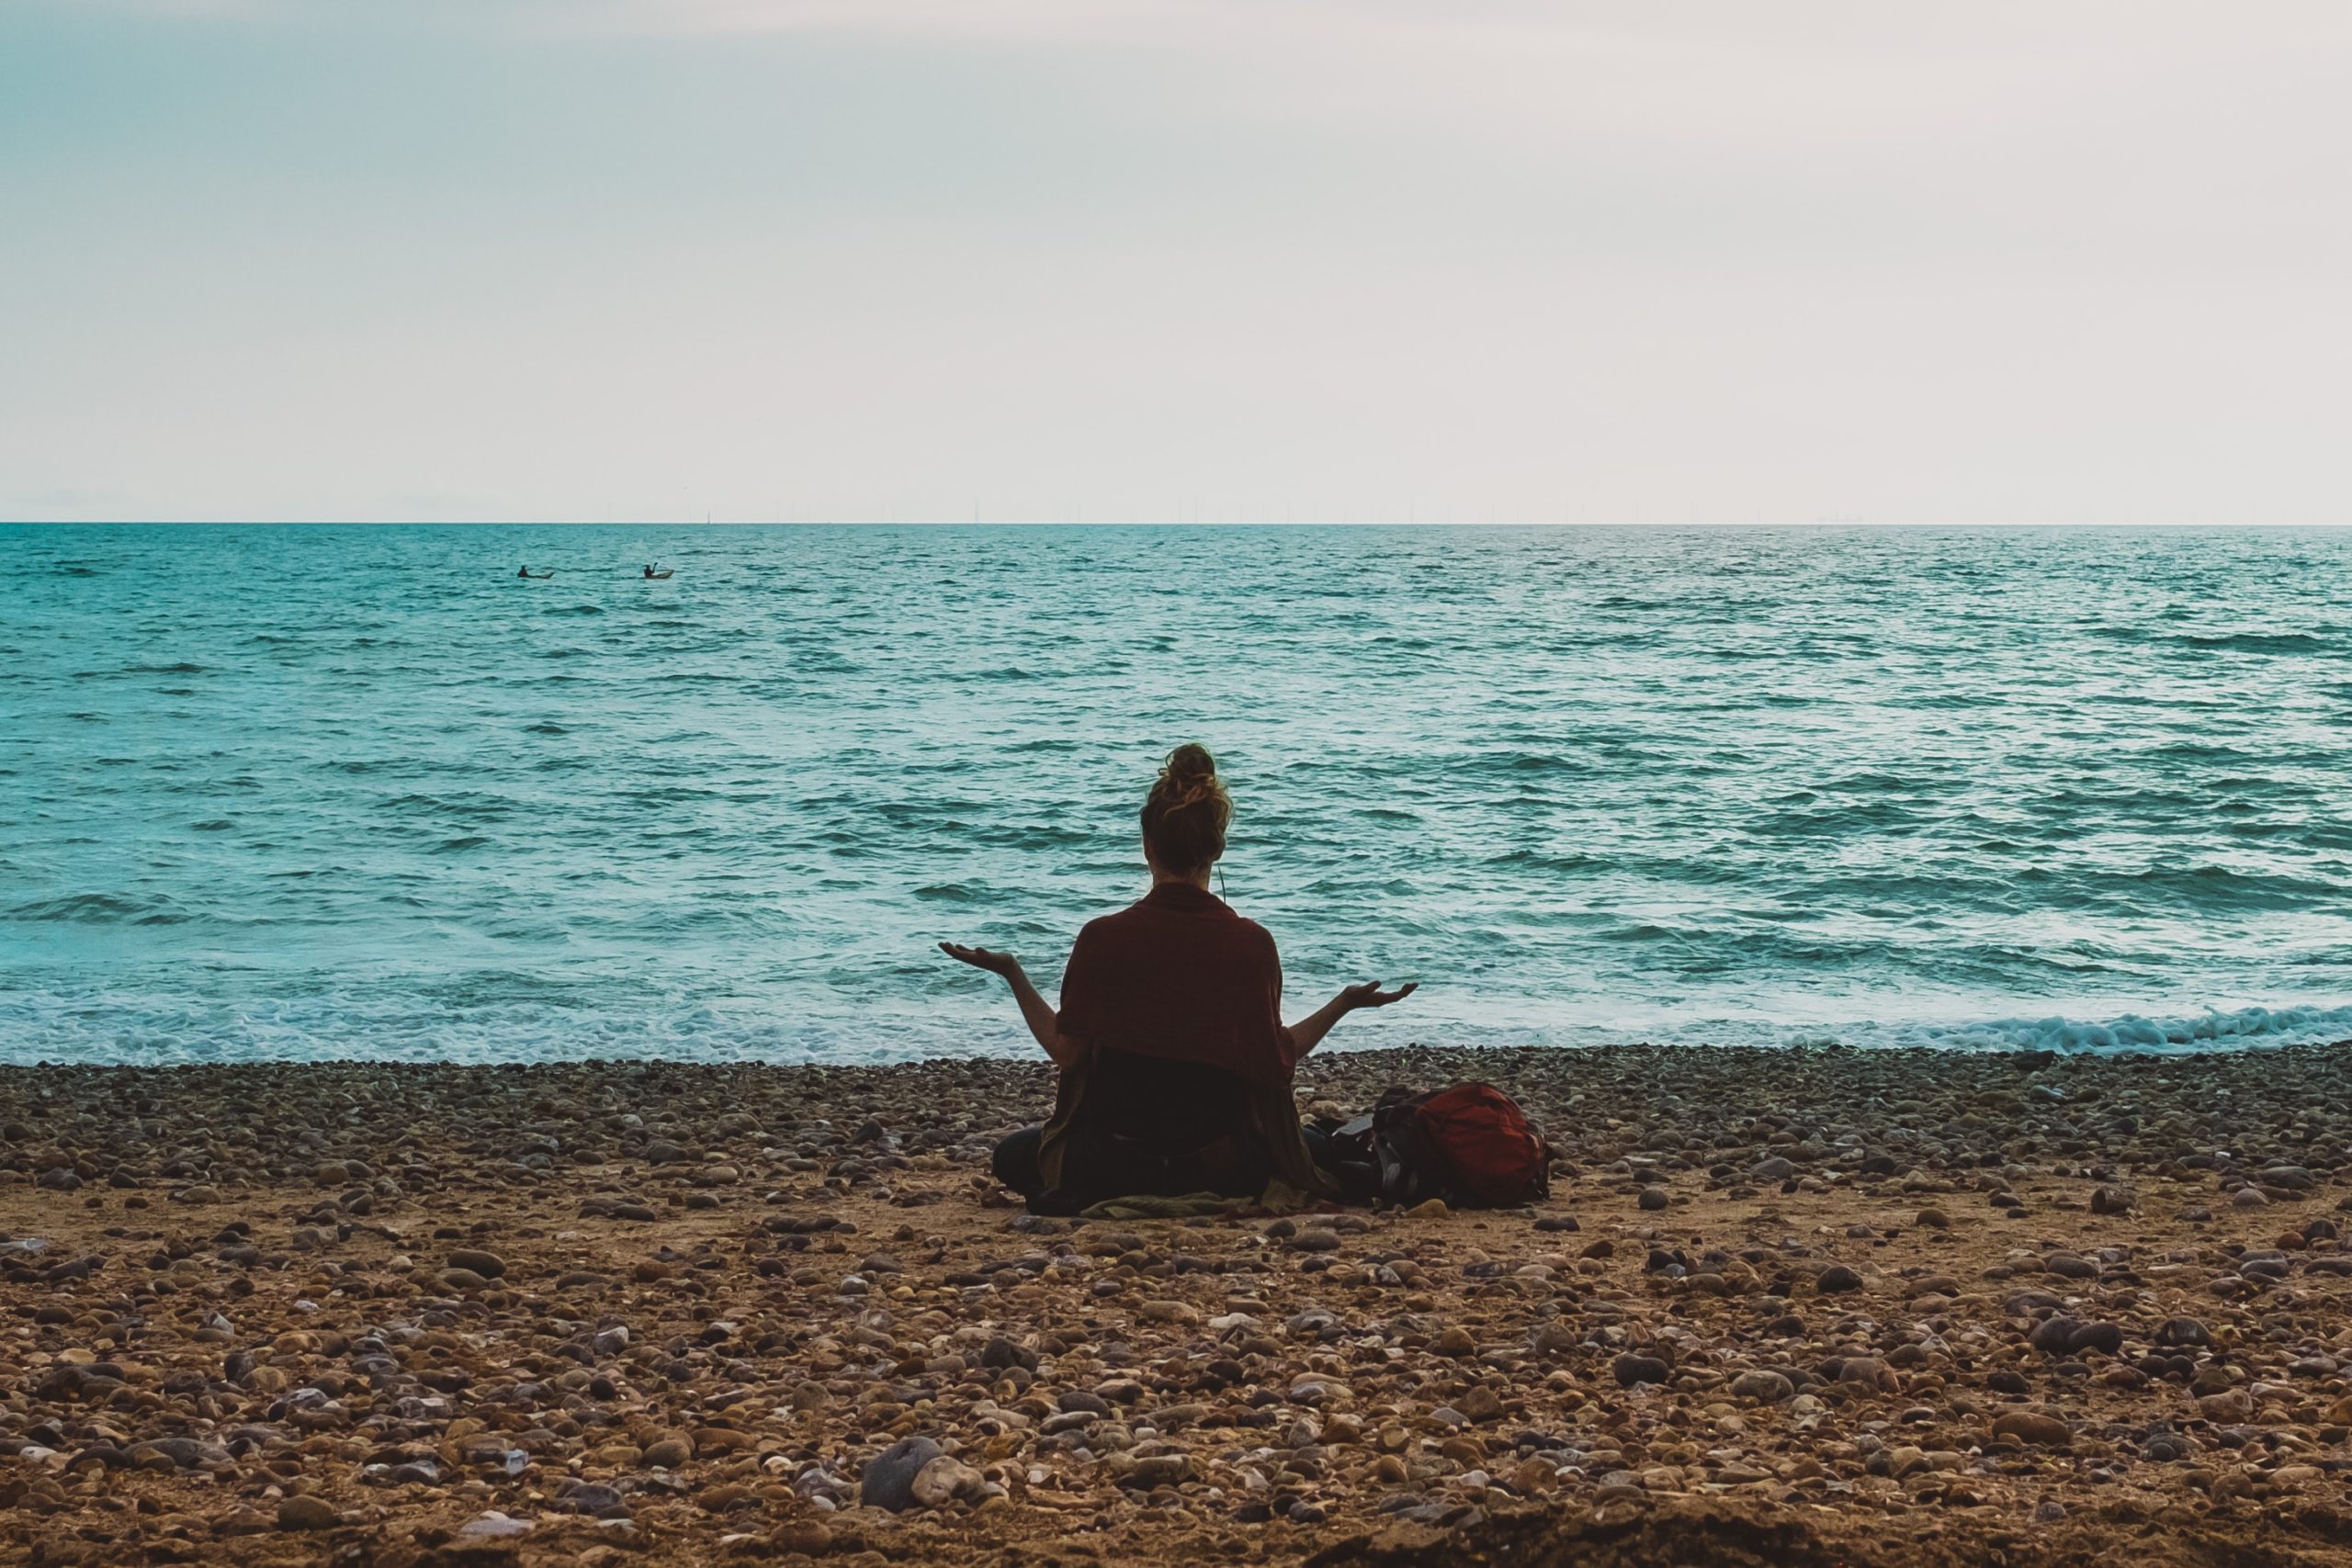 A woman sitting on a beach, meditating.